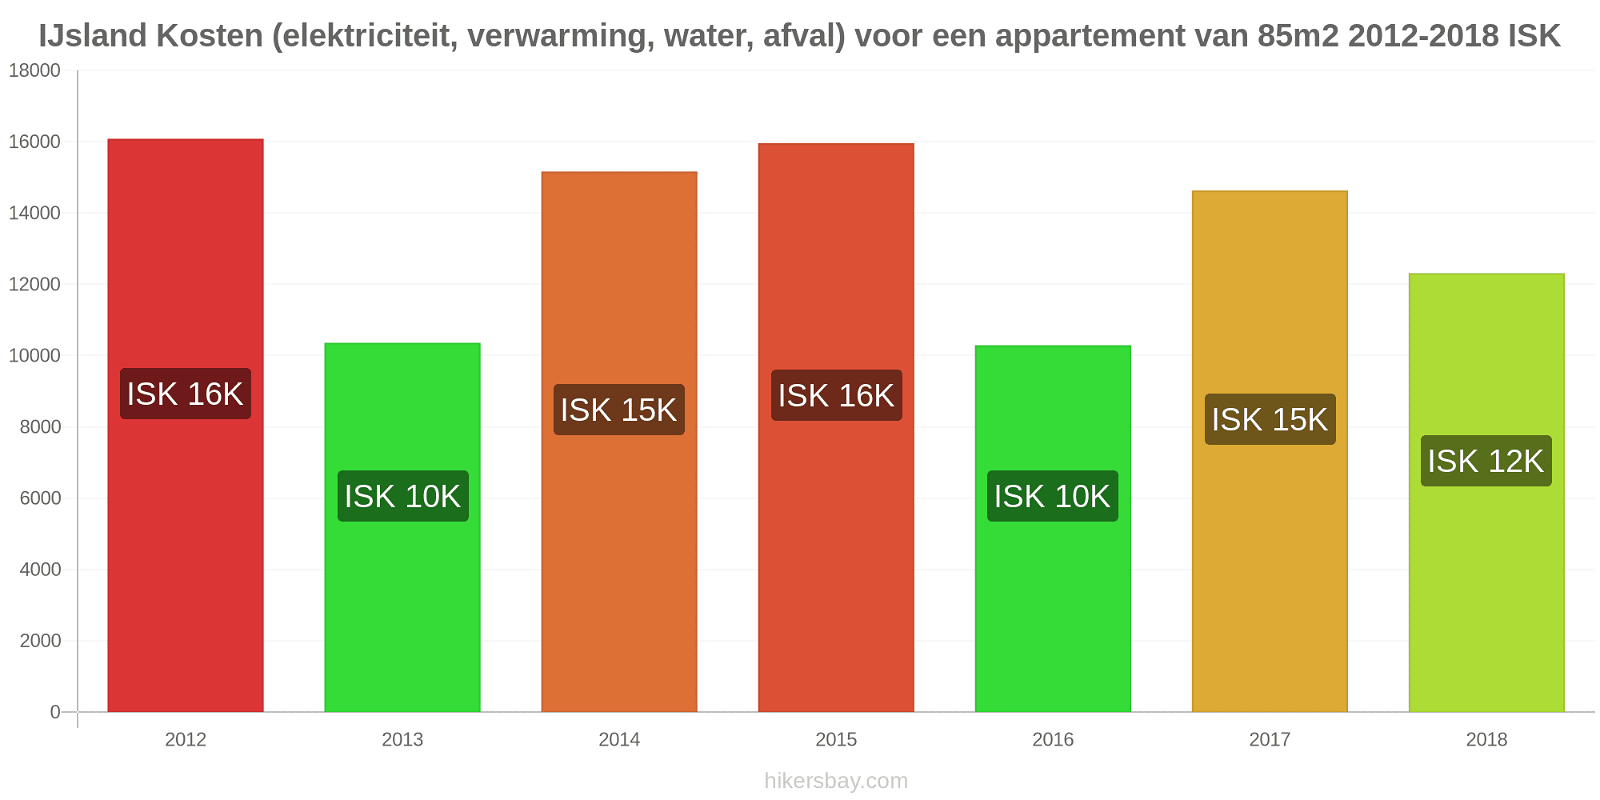 IJsland prijswijzigingen Kosten (elektriciteit, verwarming, water, afval) voor een appartement van 85m2 hikersbay.com